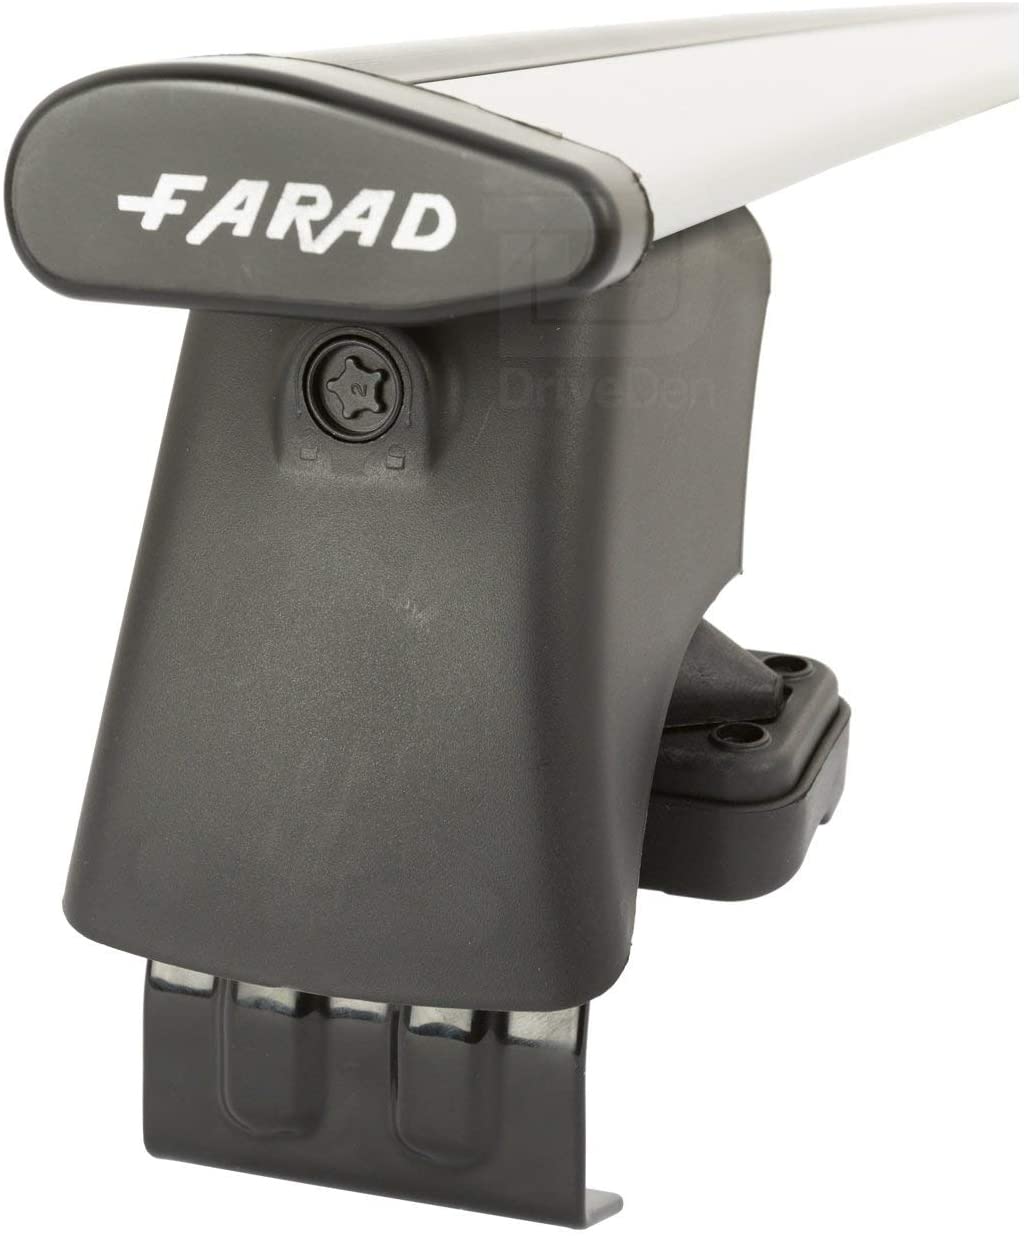 FARAD-Kit H2 per barre portatutto - Toyota Urban Cruiser 2009> (senza corrimano)